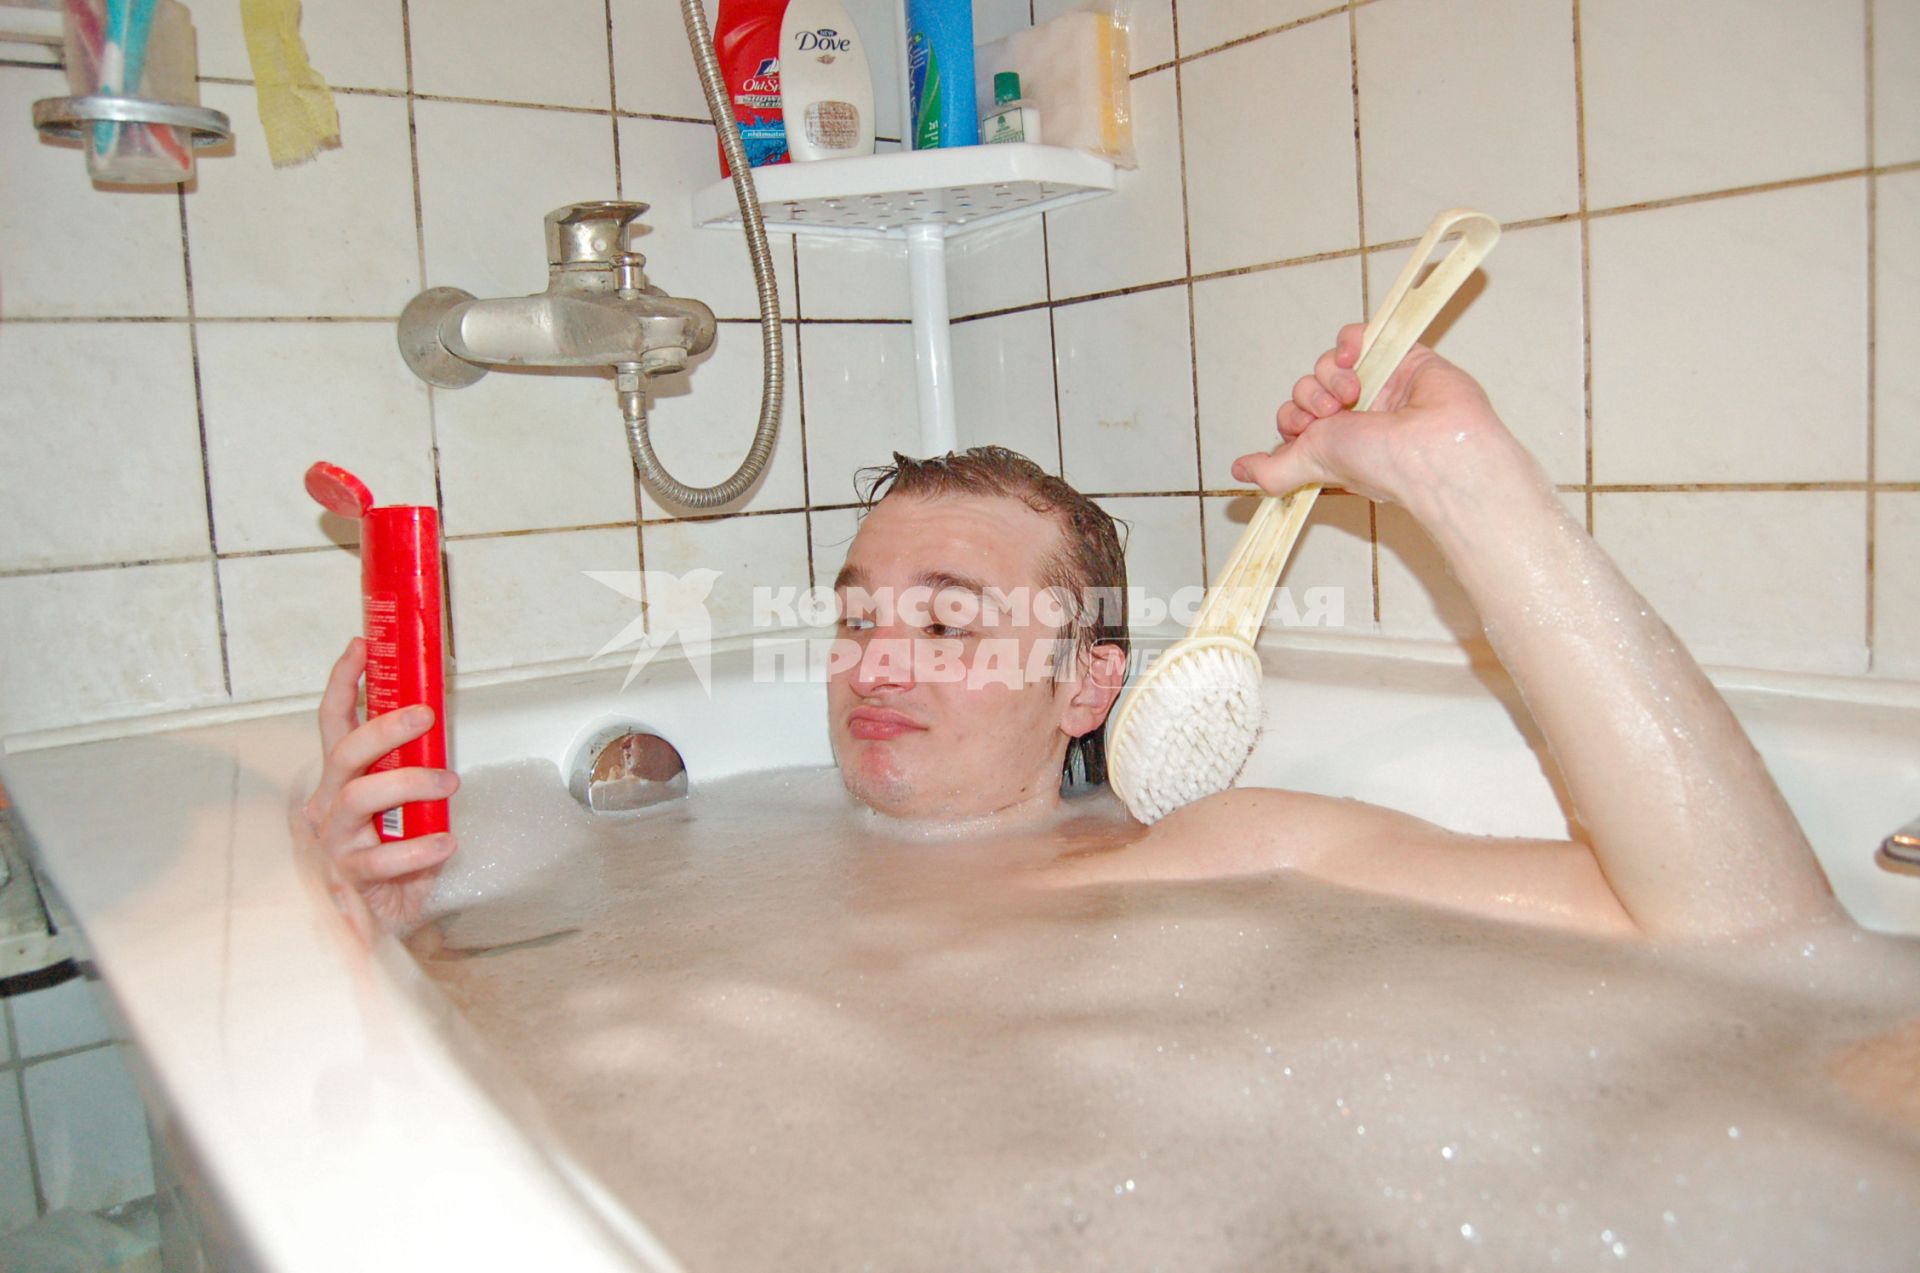 Парень, лежащий в ванне с пеной, держит флакон с моющим средством и щетку.